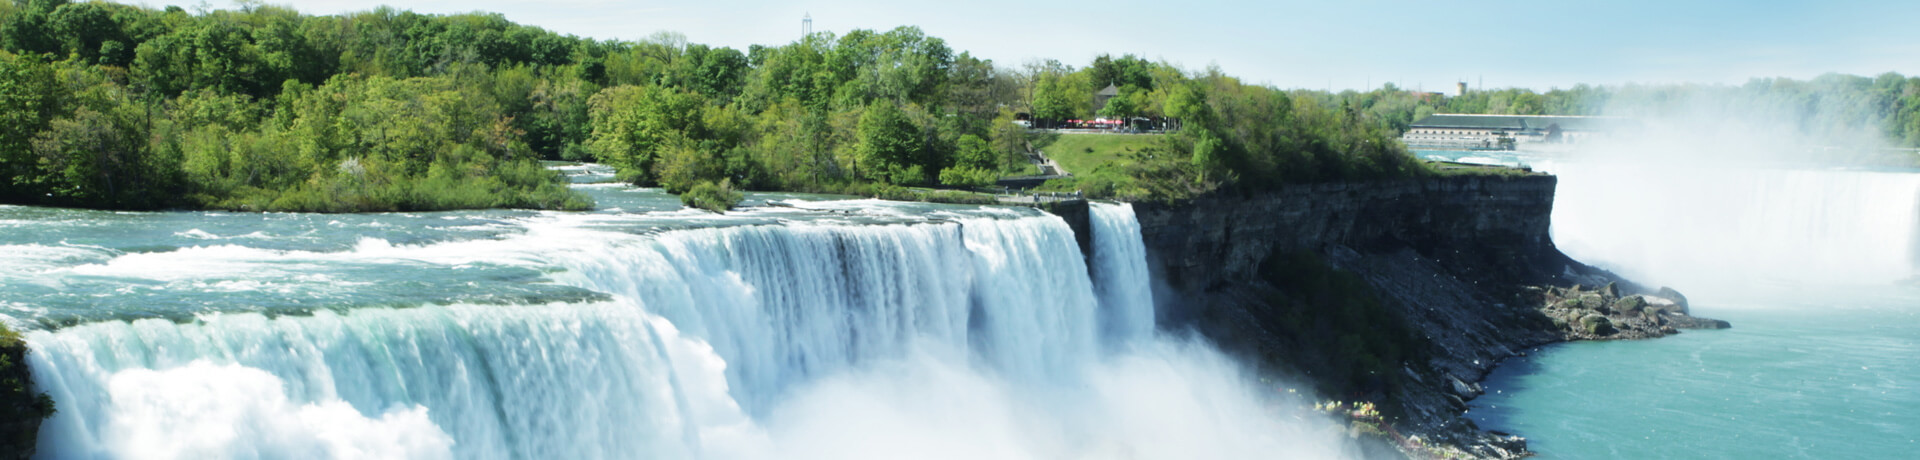 Visa for Niagara Falls, Ontario - Canada